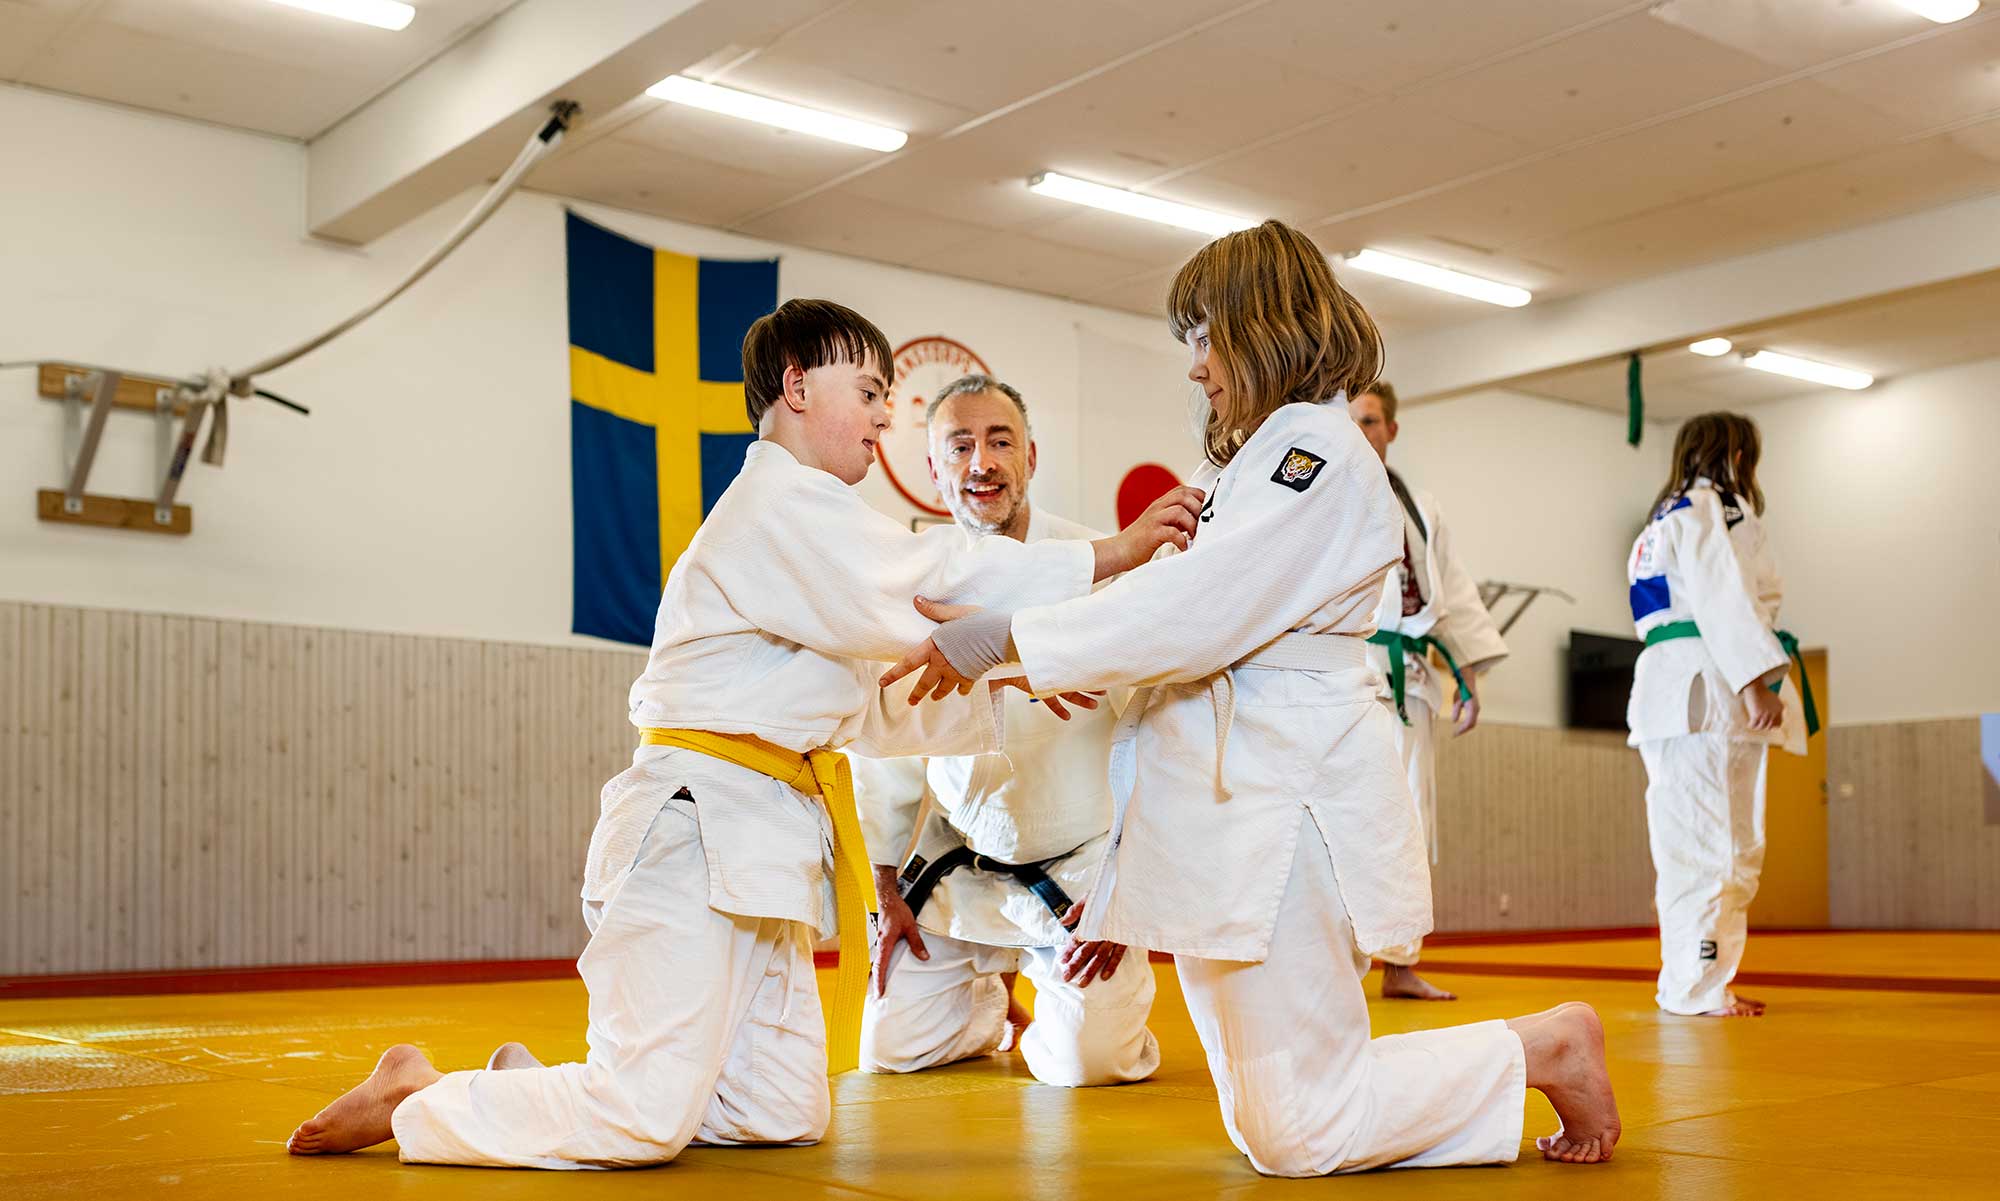 Children practice judo.